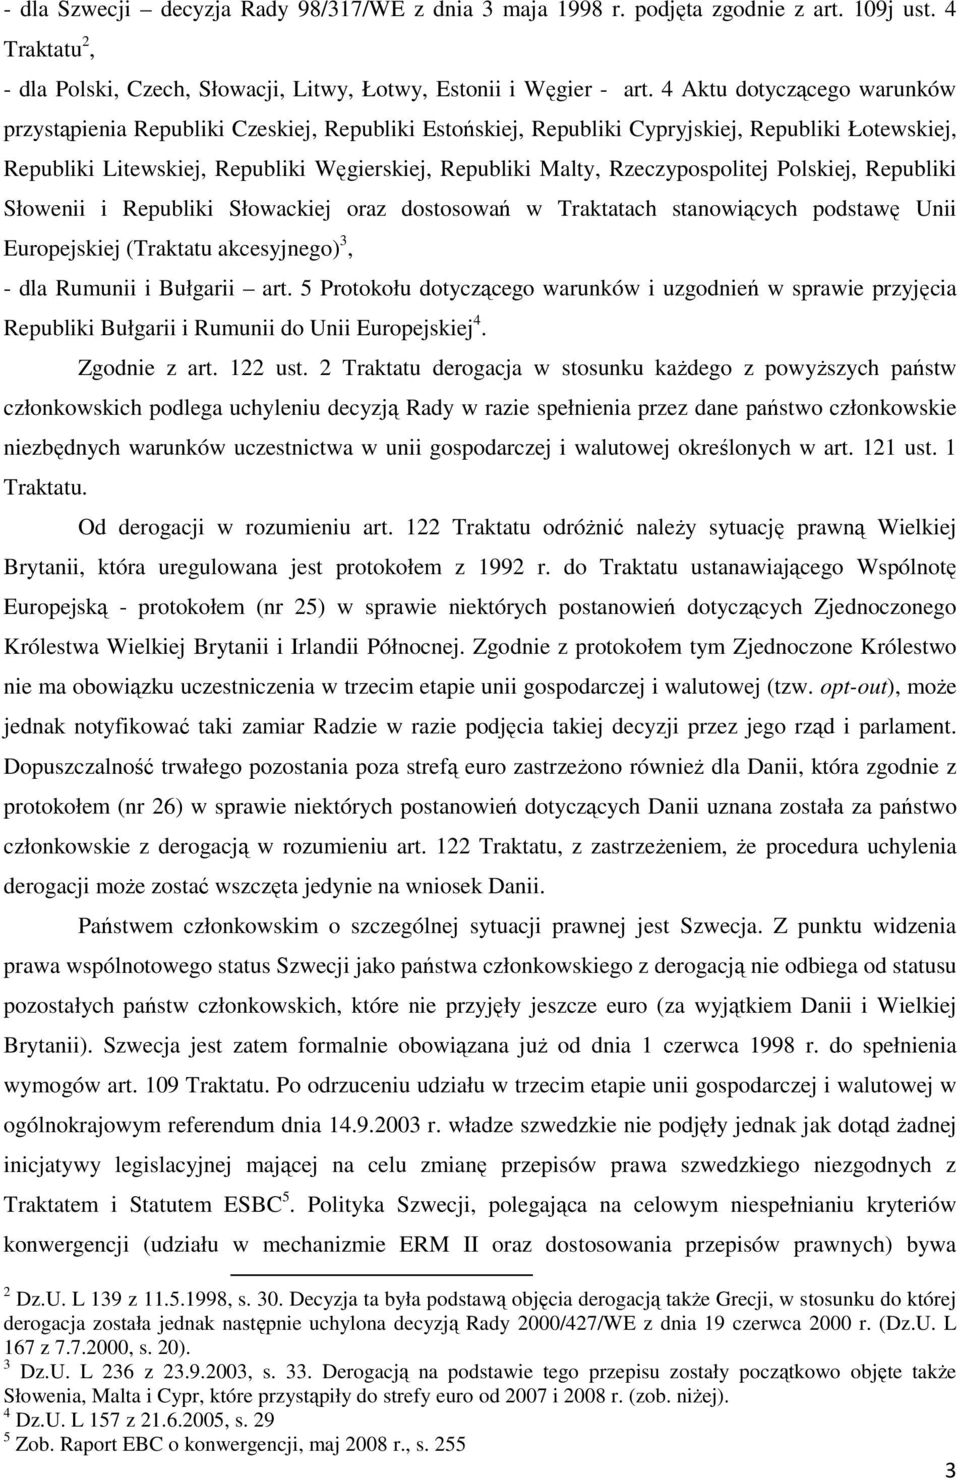 Rzeczypospolitej Polskiej, Republiki Słowenii i Republiki Słowackiej oraz dostosowań w Traktatach stanowiących podstawę Unii Europejskiej (Traktatu akcesyjnego) 3, - dla Rumunii i Bułgarii art.